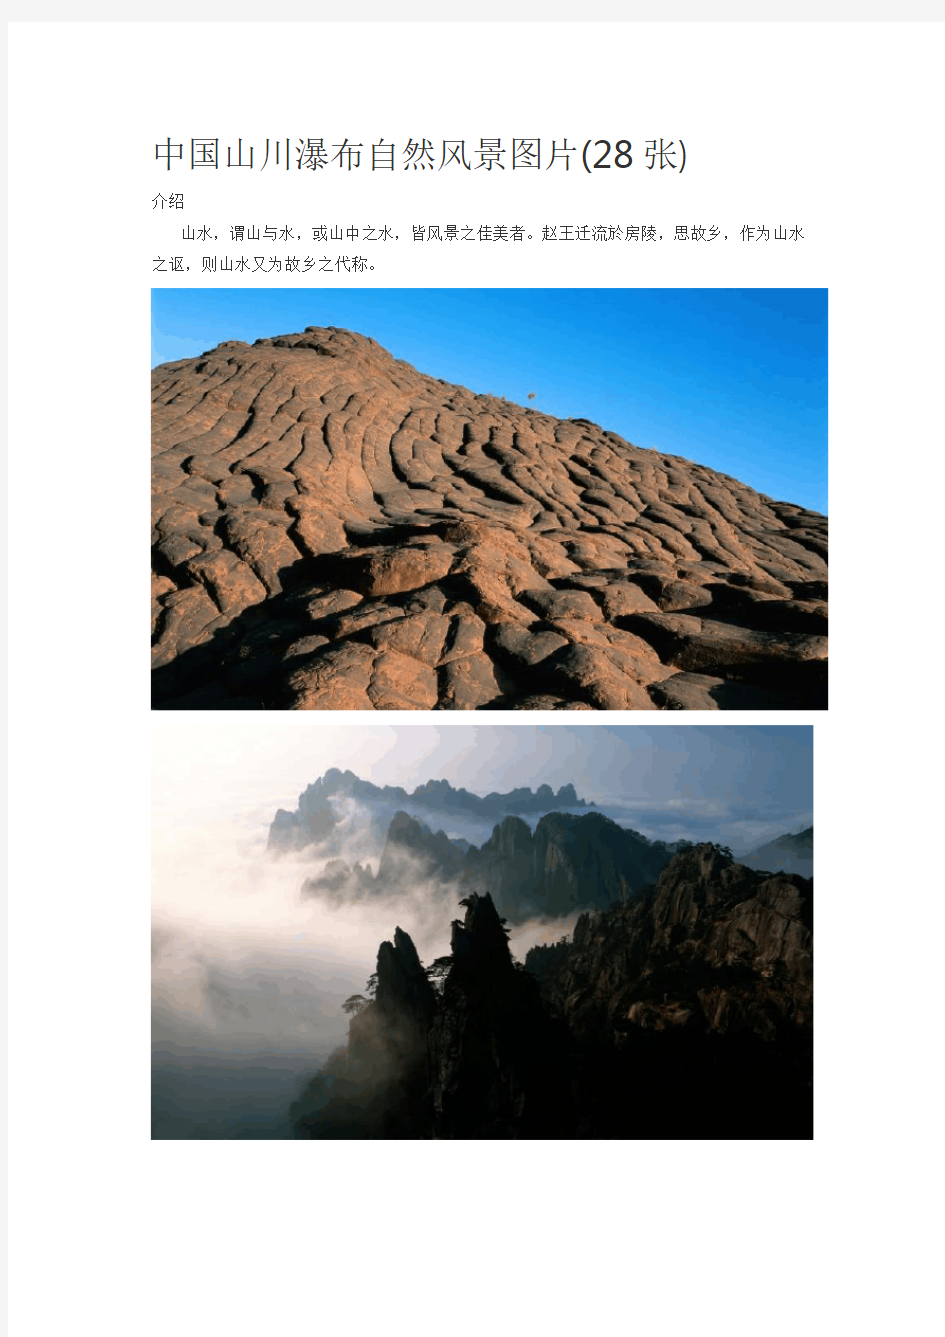 中国山川瀑布自然风景图片(28张)